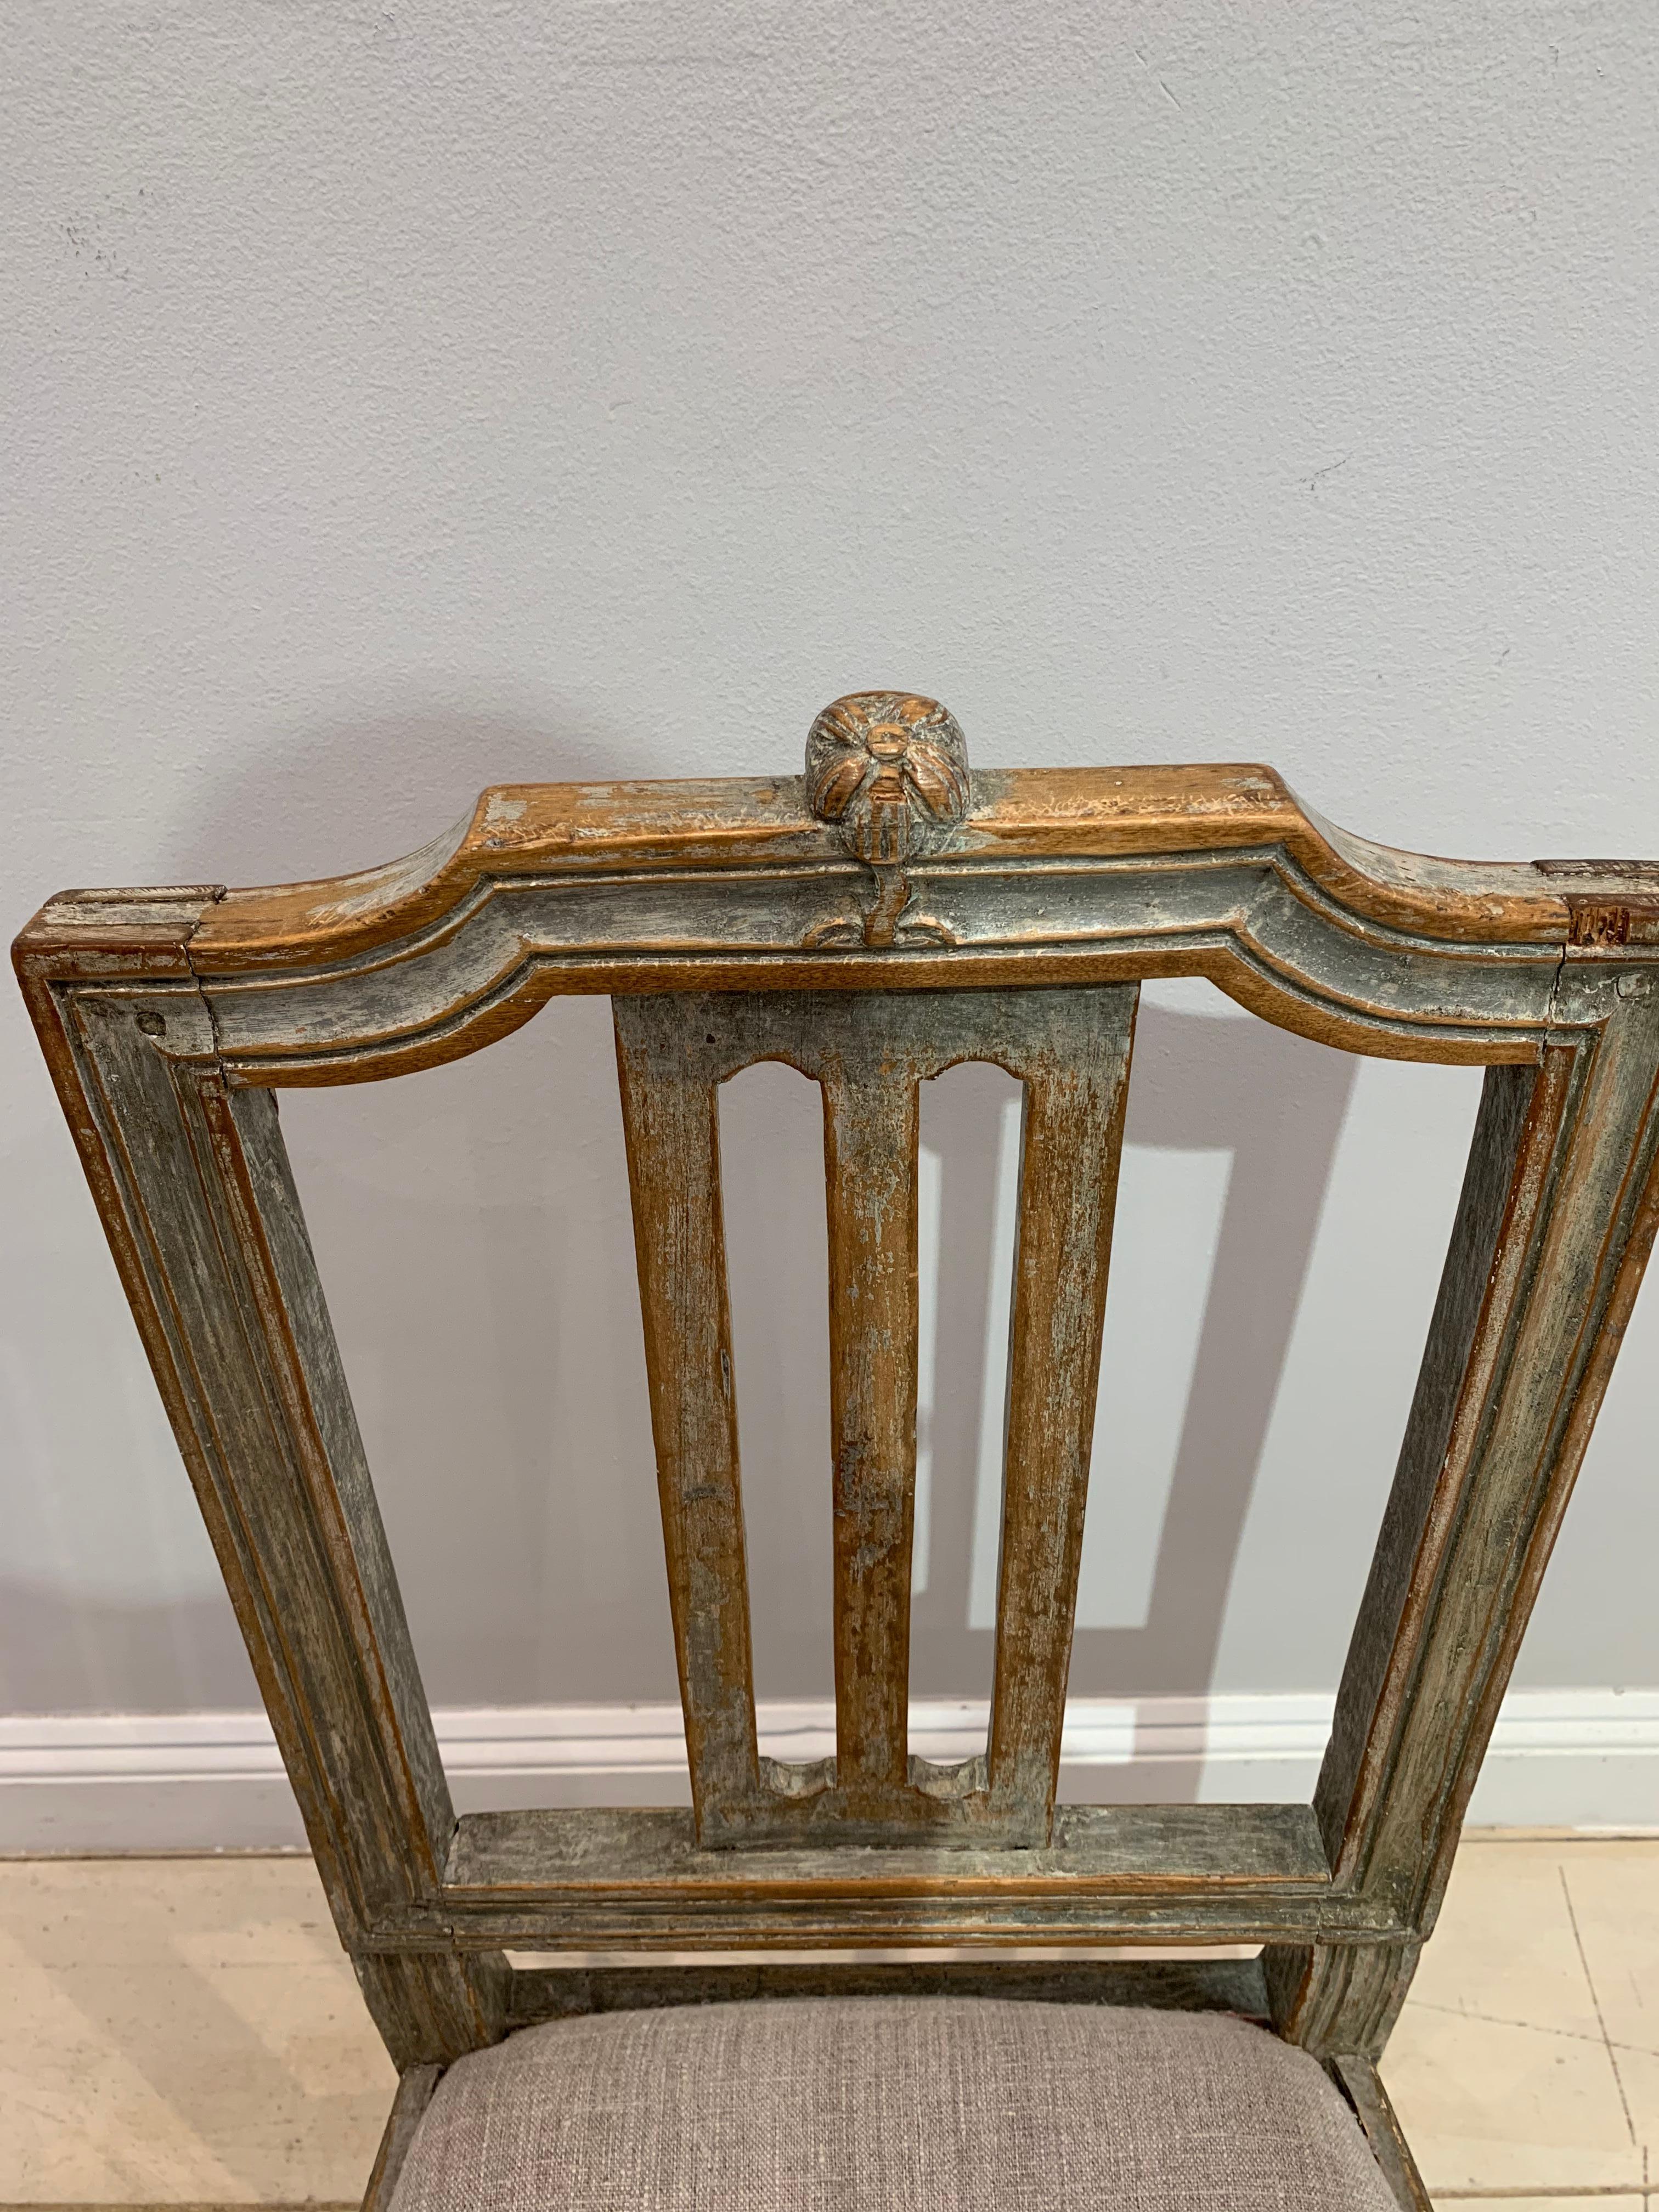 Schöner bemalter schwedischer Gustavianischer Stuhl aus dem späten 18. Jahrhundert.
Es hat eine dekorative geschnitzte Holzblume an der Spitze, behält viel von seiner ursprünglichen Farbe und hat einen Drop-in-Sitz in neutralen Leinen